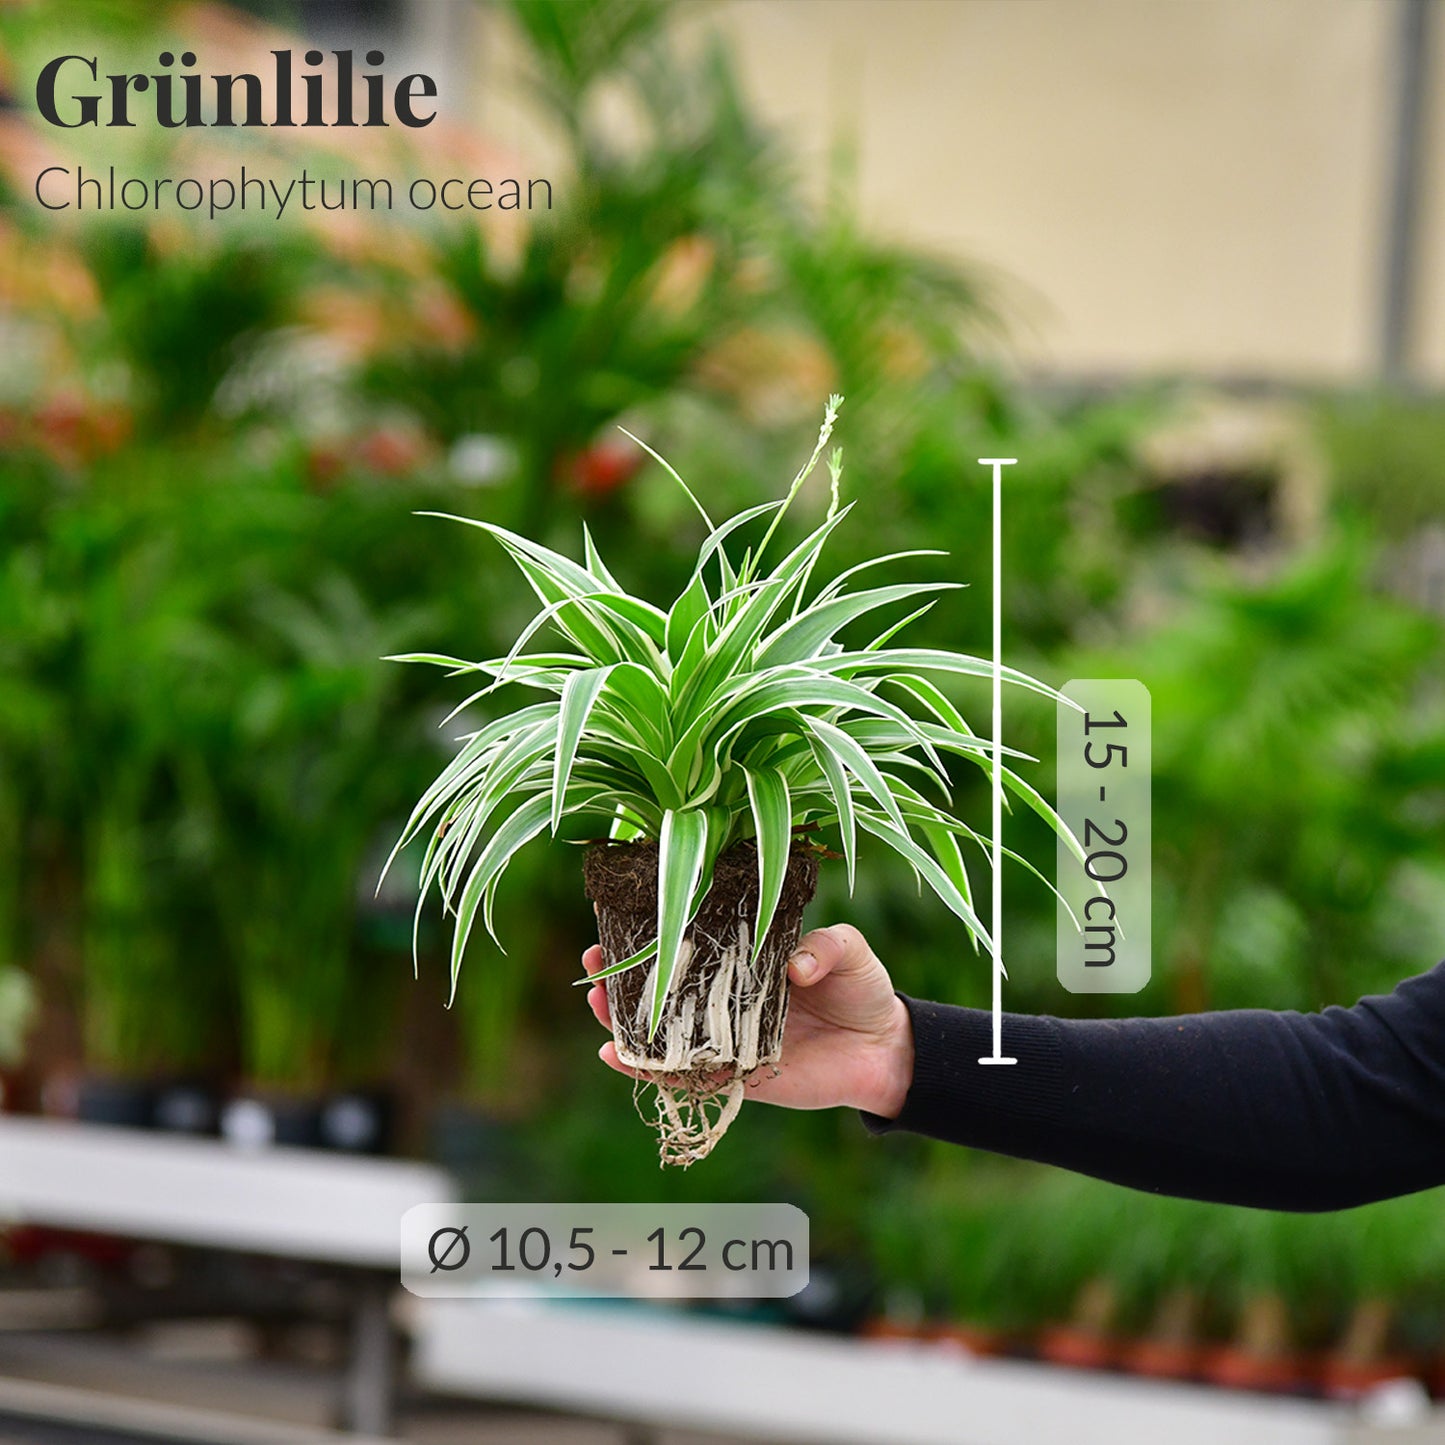 Kleine Grünlilie/Chlorophytum mit Maßangaben frisch vom Gärtner